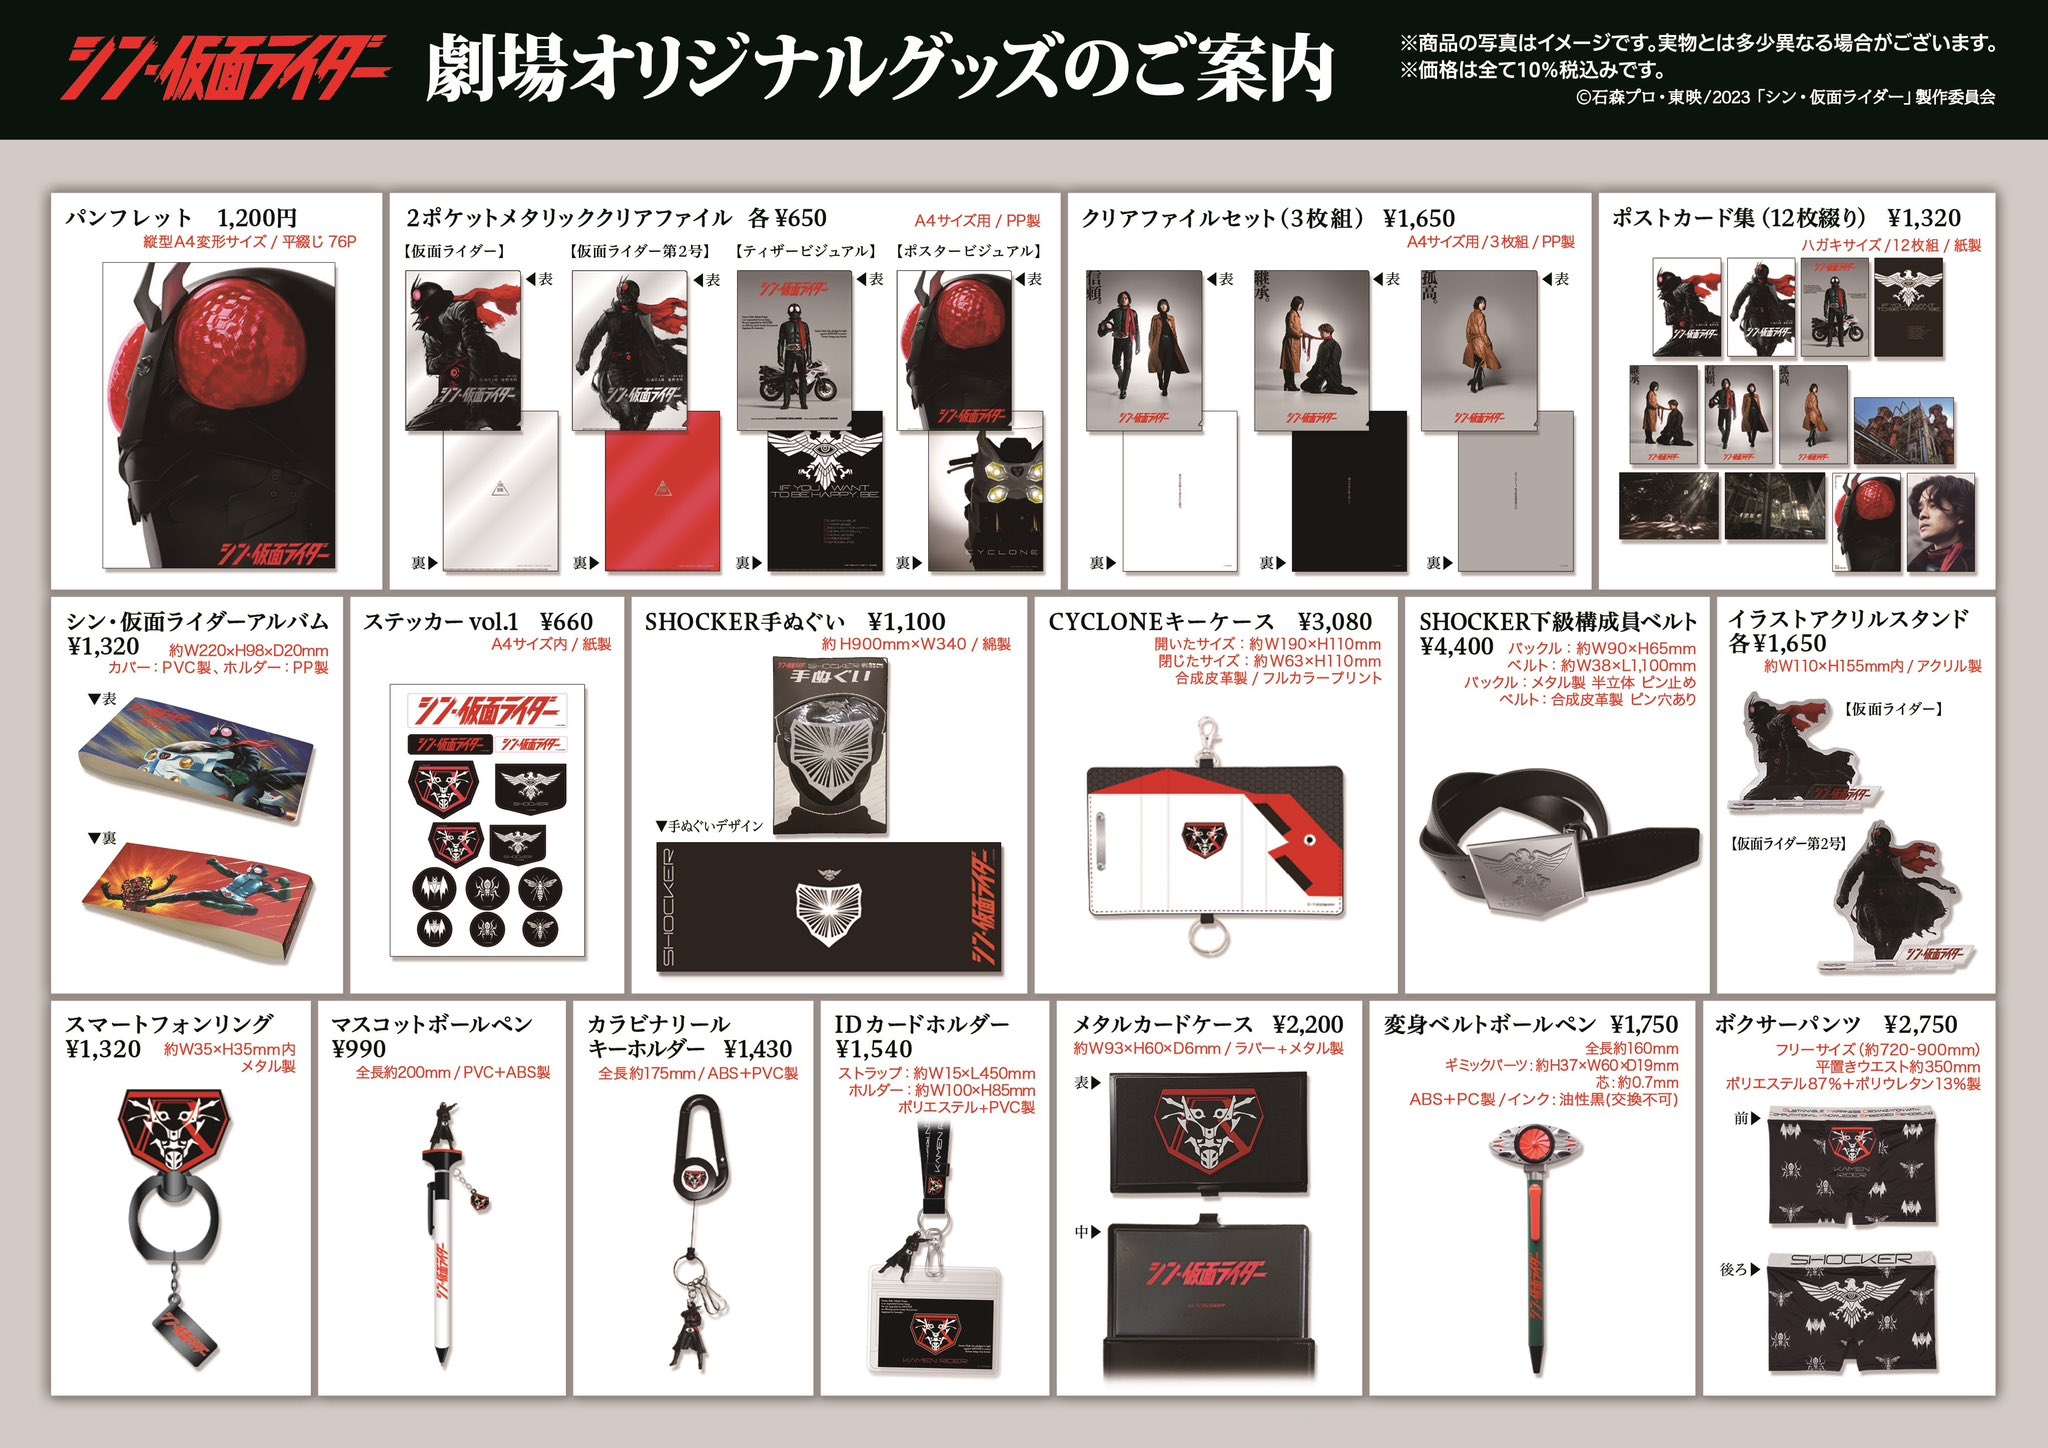 『シン・仮面ライダー』劇場オリジナル商品のラインナップが発表